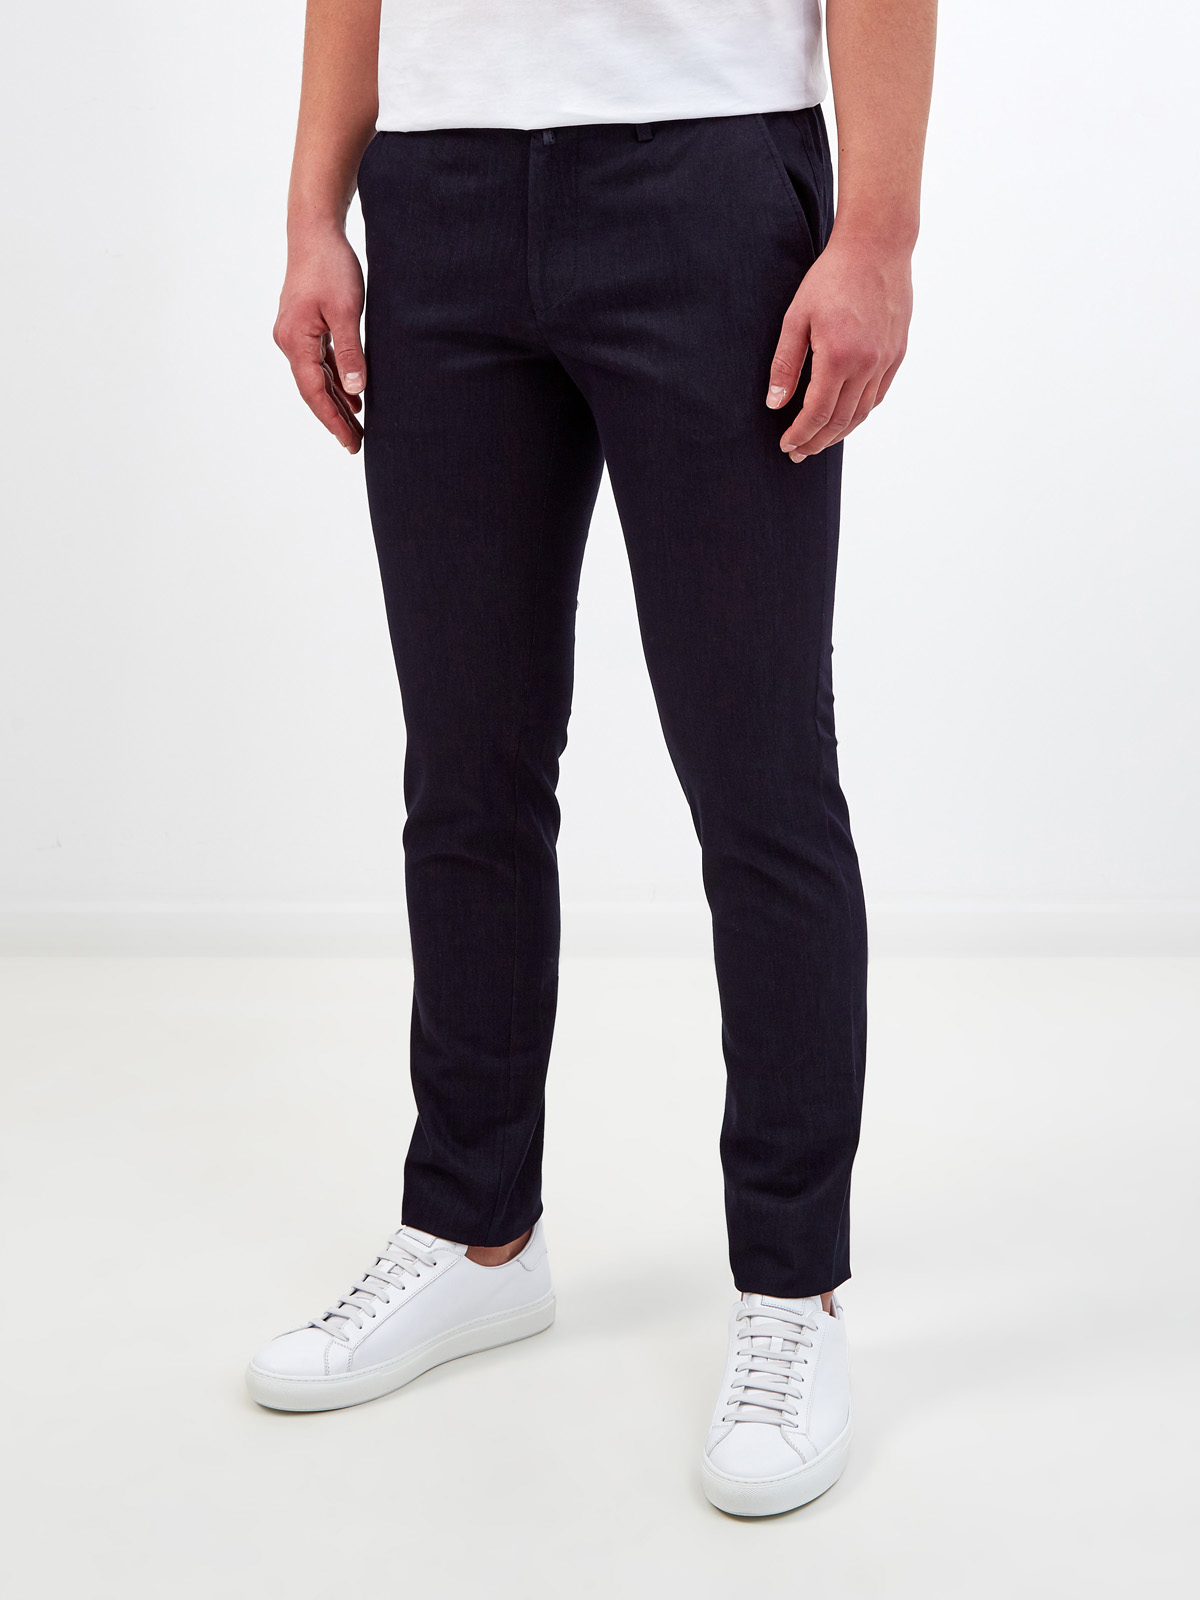 Легкие брюки в стиле casual с поясом на кулиске CUDGI, цвет черный, размер M;L;XL;2XL;4XL;5XL;S - фото 3